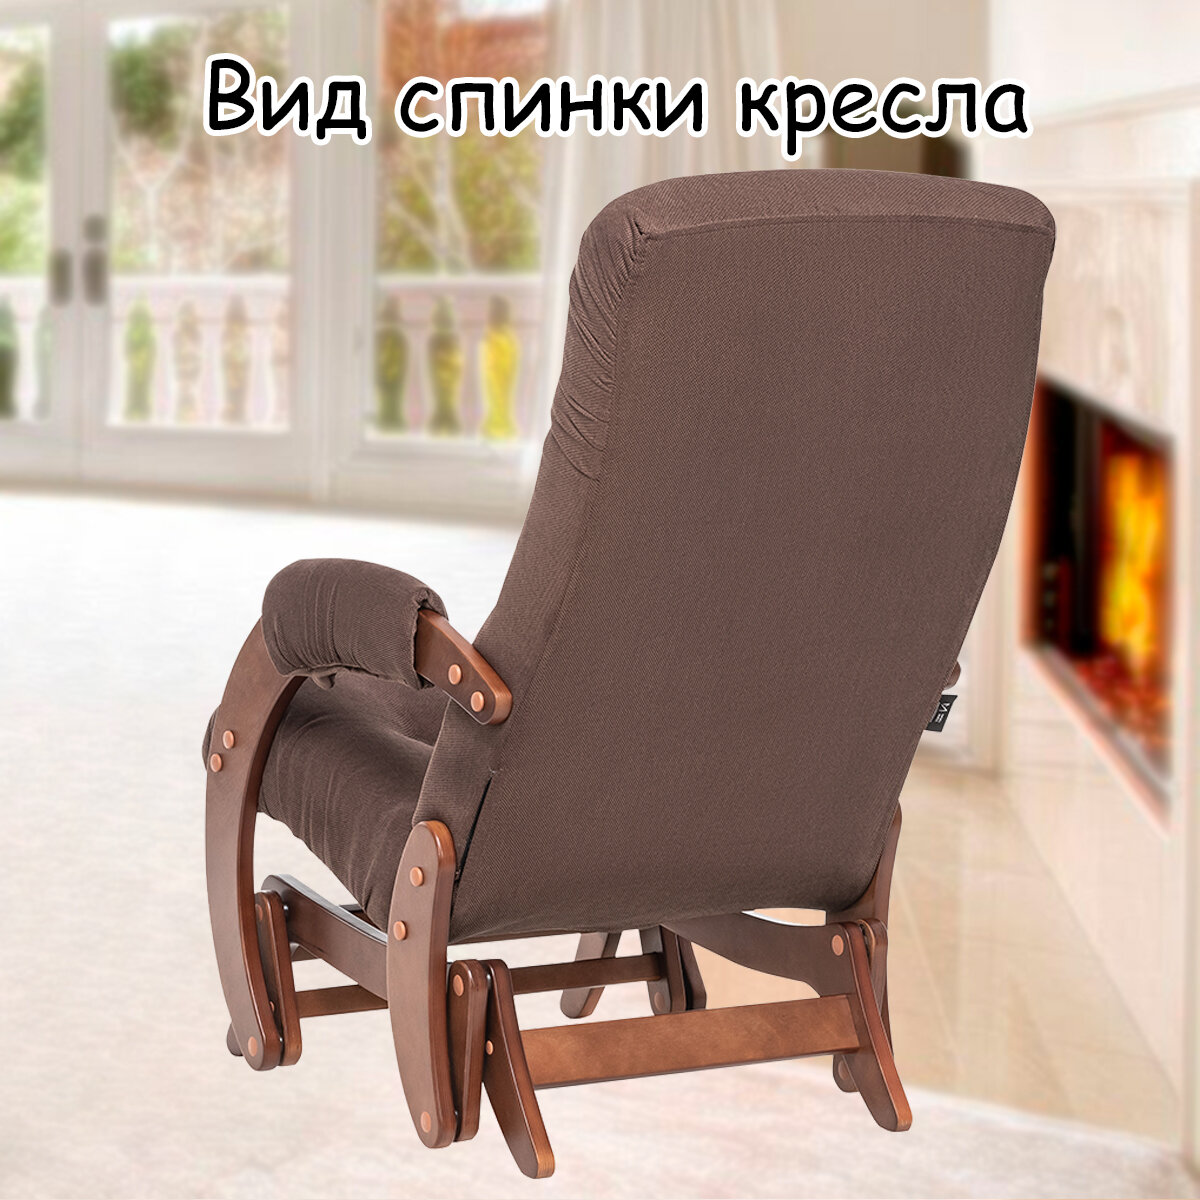 Кресло-качалка (глайдер) с маятниковым механизмом для взрослых 55х88х100 см, модель 68, verona, цвет: Brown (коричневый), каркас: Oreh (коричневый) - фотография № 8